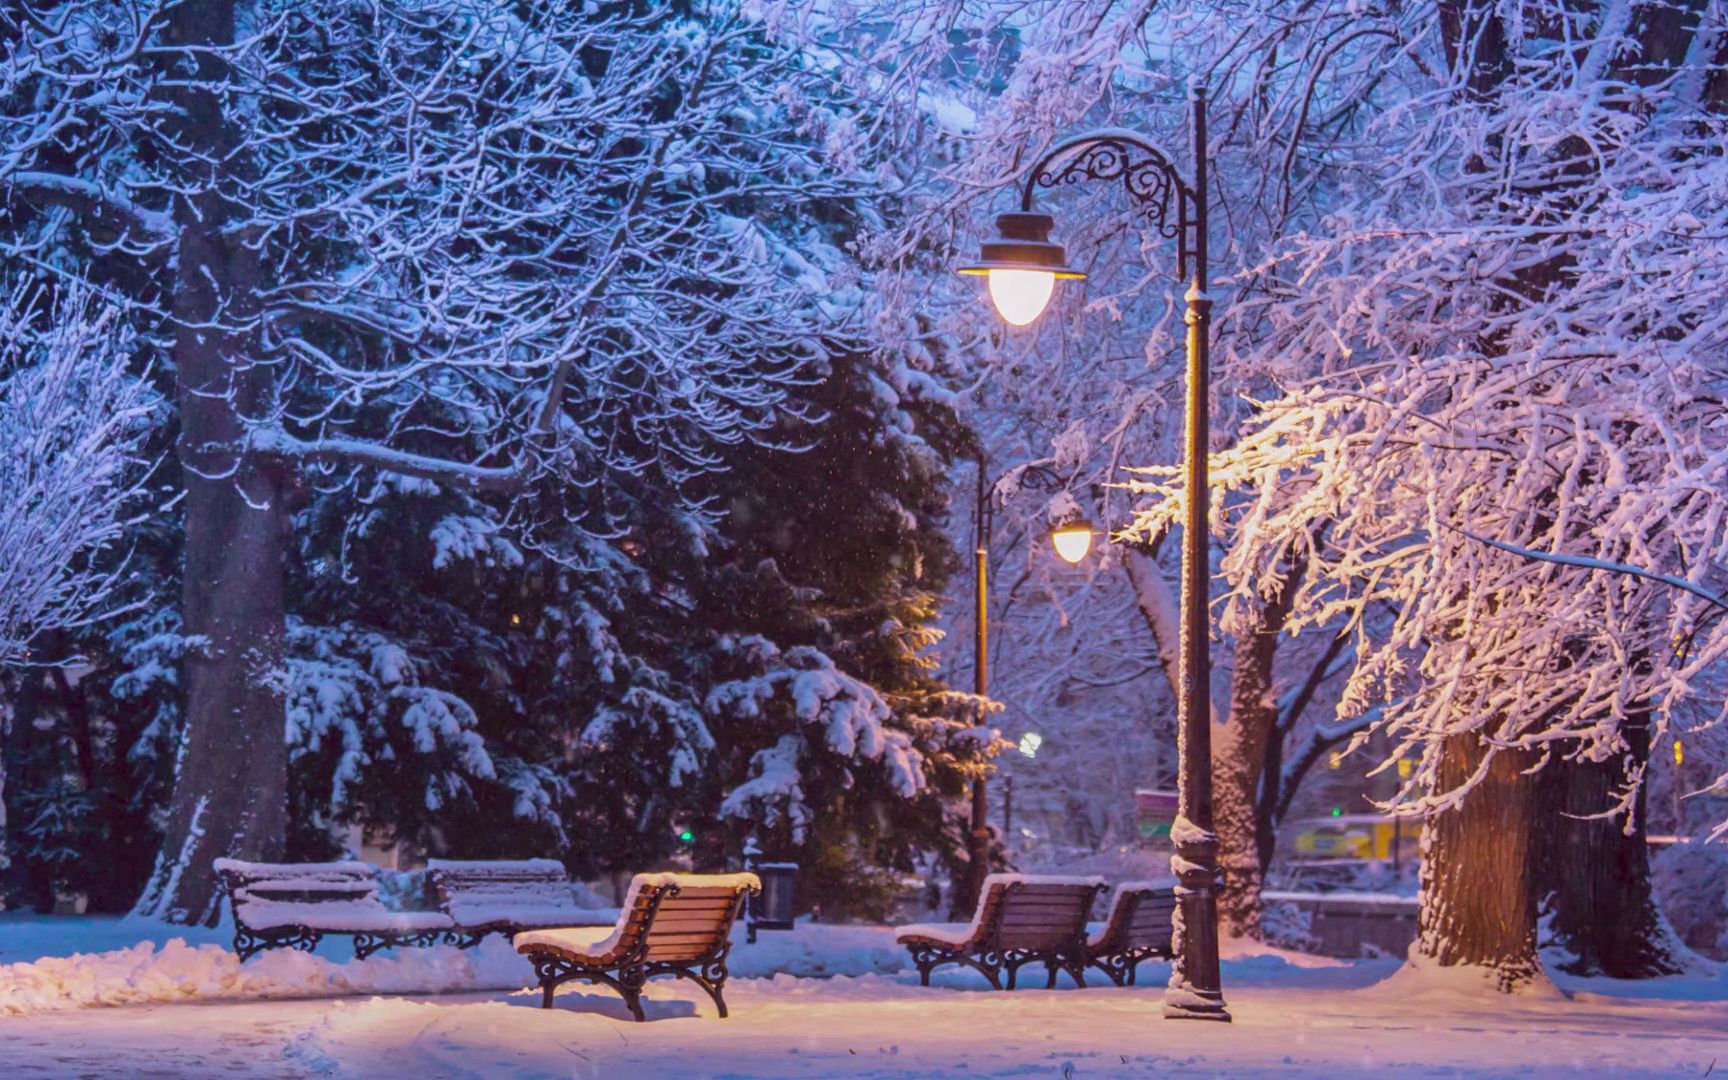 最浪漫的雪夜 你我坐在长椅上听雪落下的声音 l 路灯下的雪 l 爵士